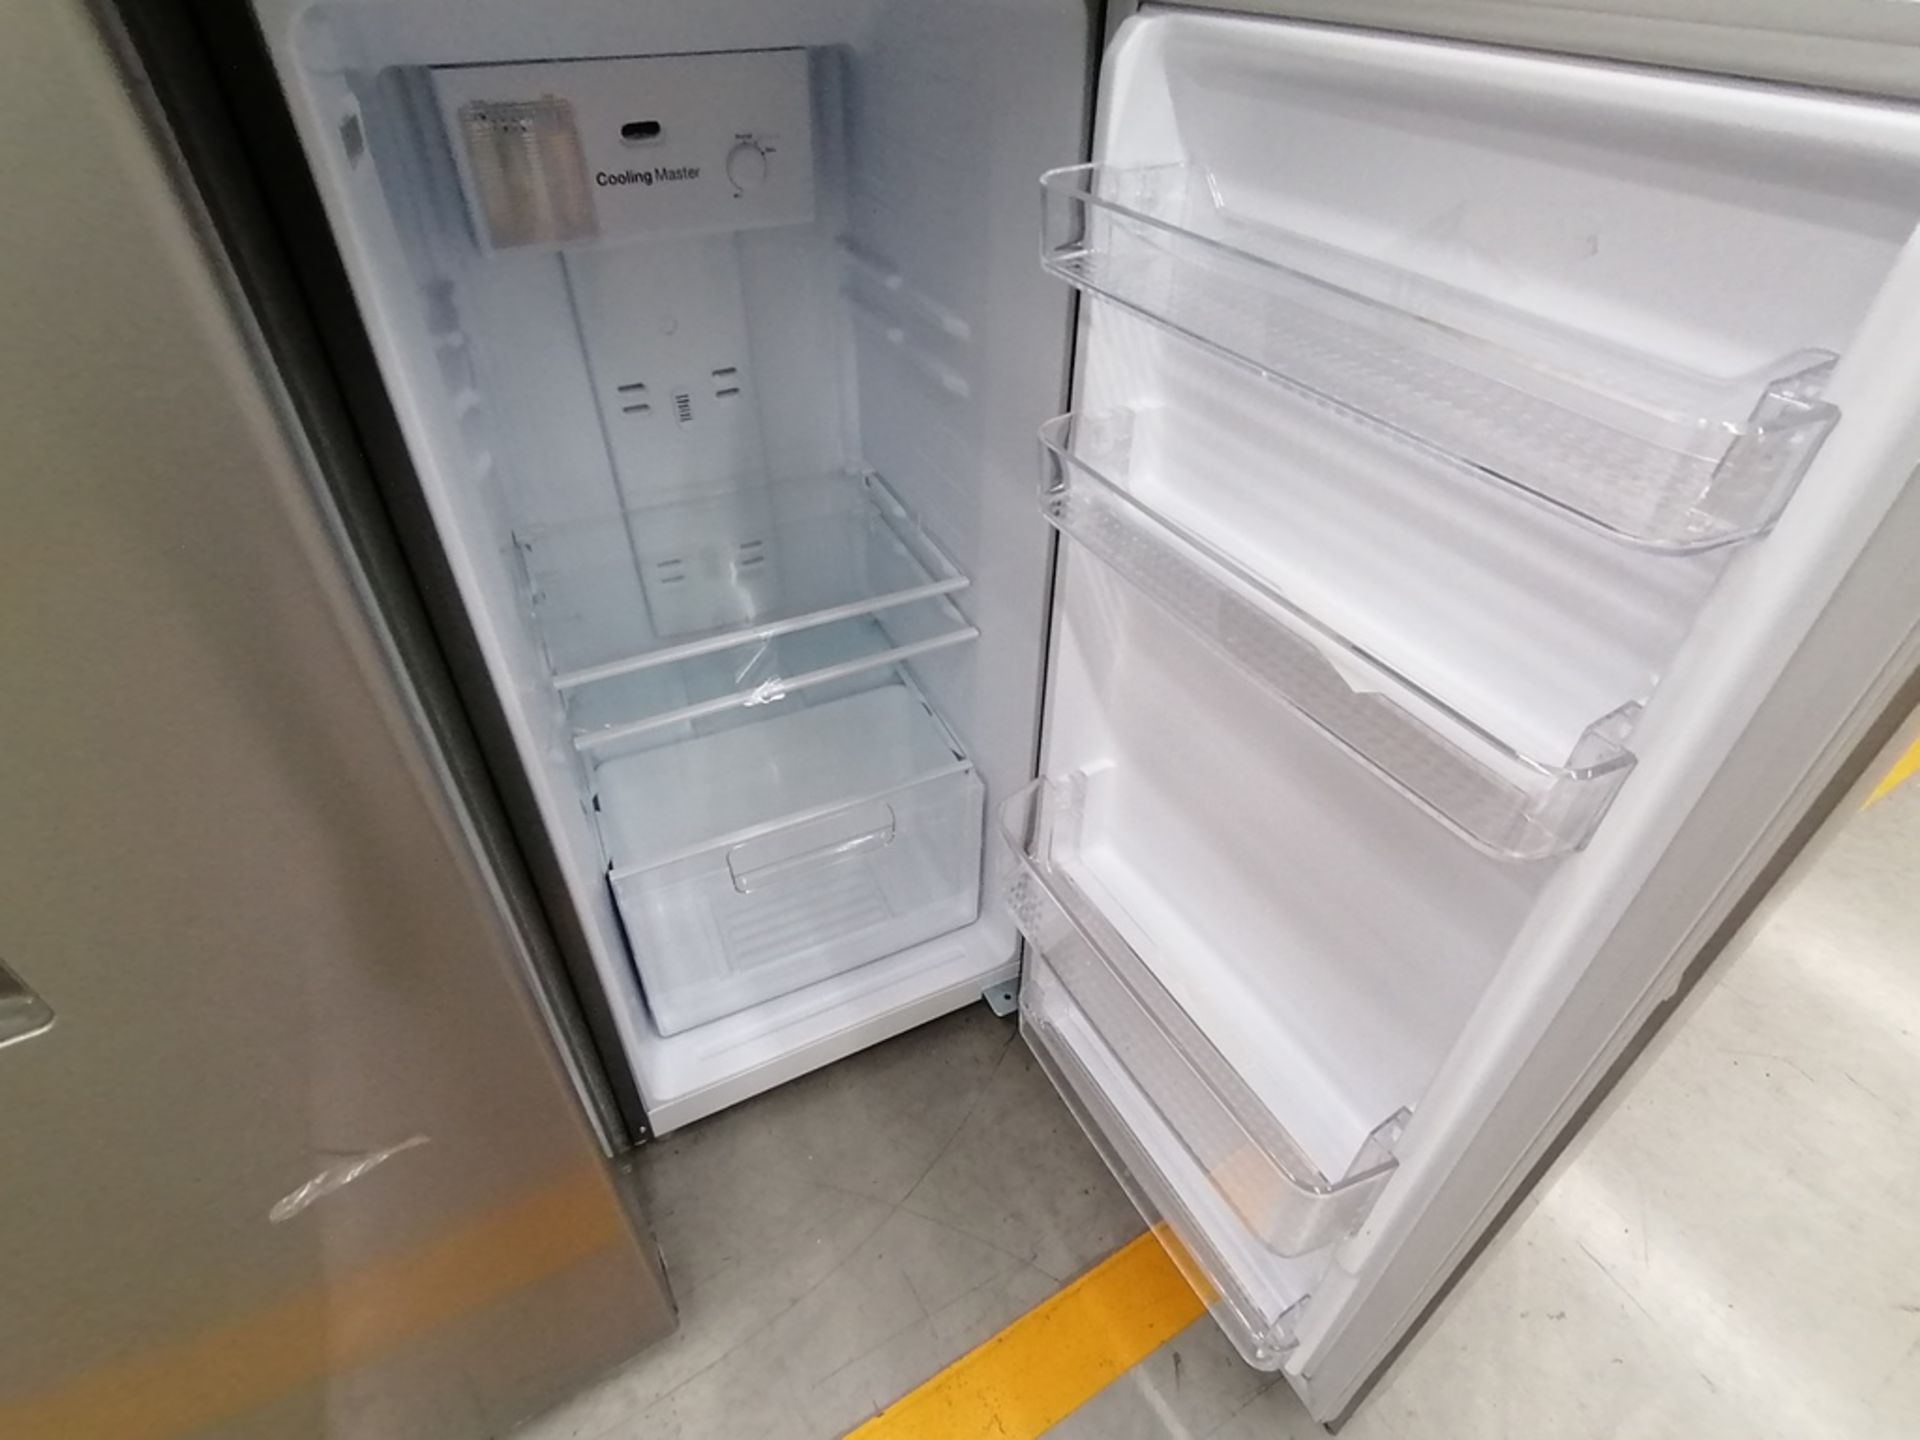 Lote de 2 Refrigeradores incluye: 1 Refrigerador, Marca Winia, Modelo DFR25120GN, Serie MR219N11624 - Image 7 of 15